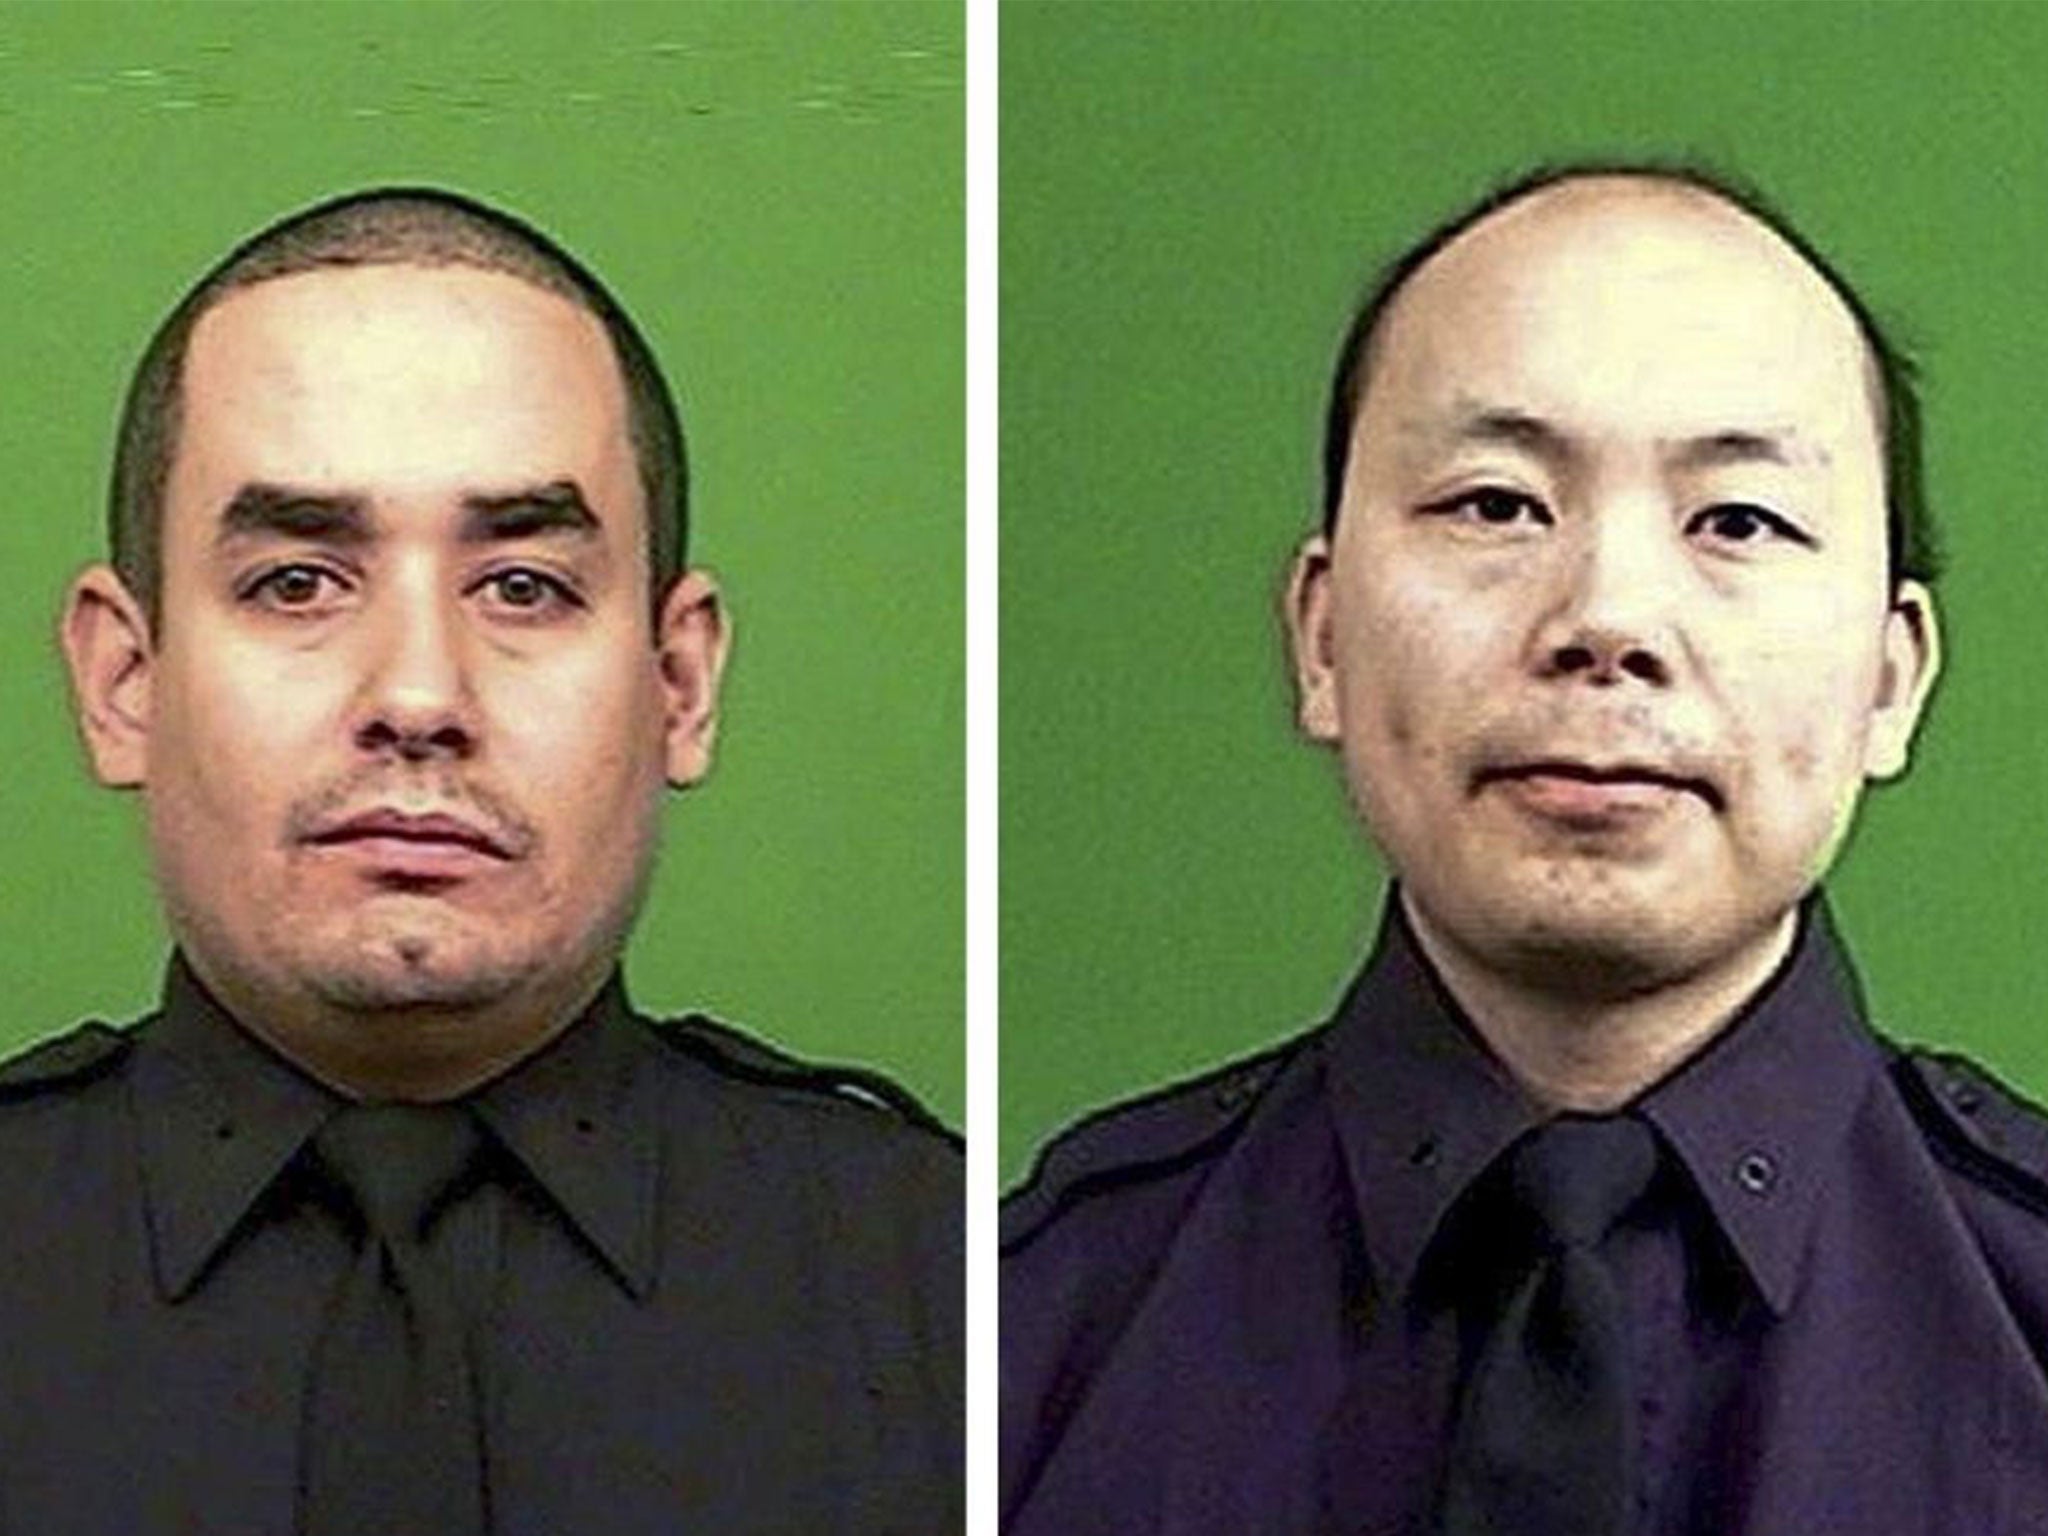 Rafael Ramos (left) and Wenjian Liu were shot dead while sitting in their patrol car in Brooklyn